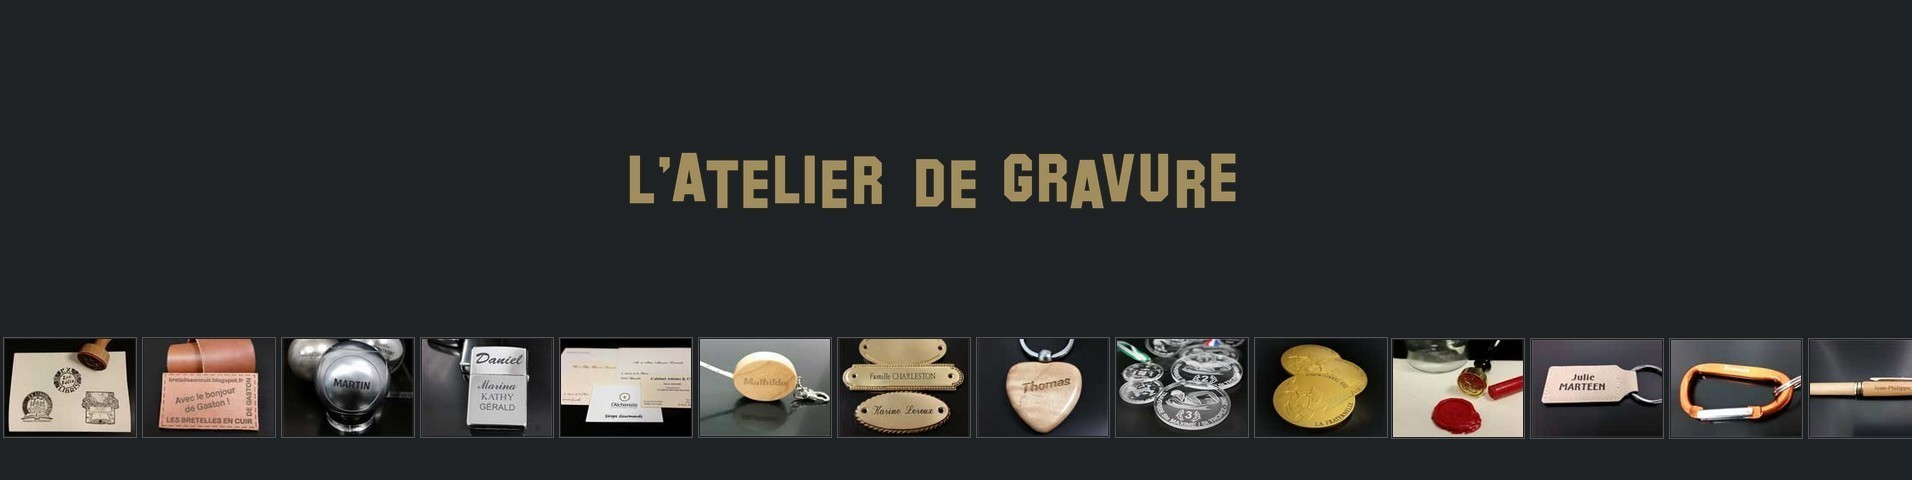 Boutique L'ATELIER DE GRAVURE - Grenoble Shopping